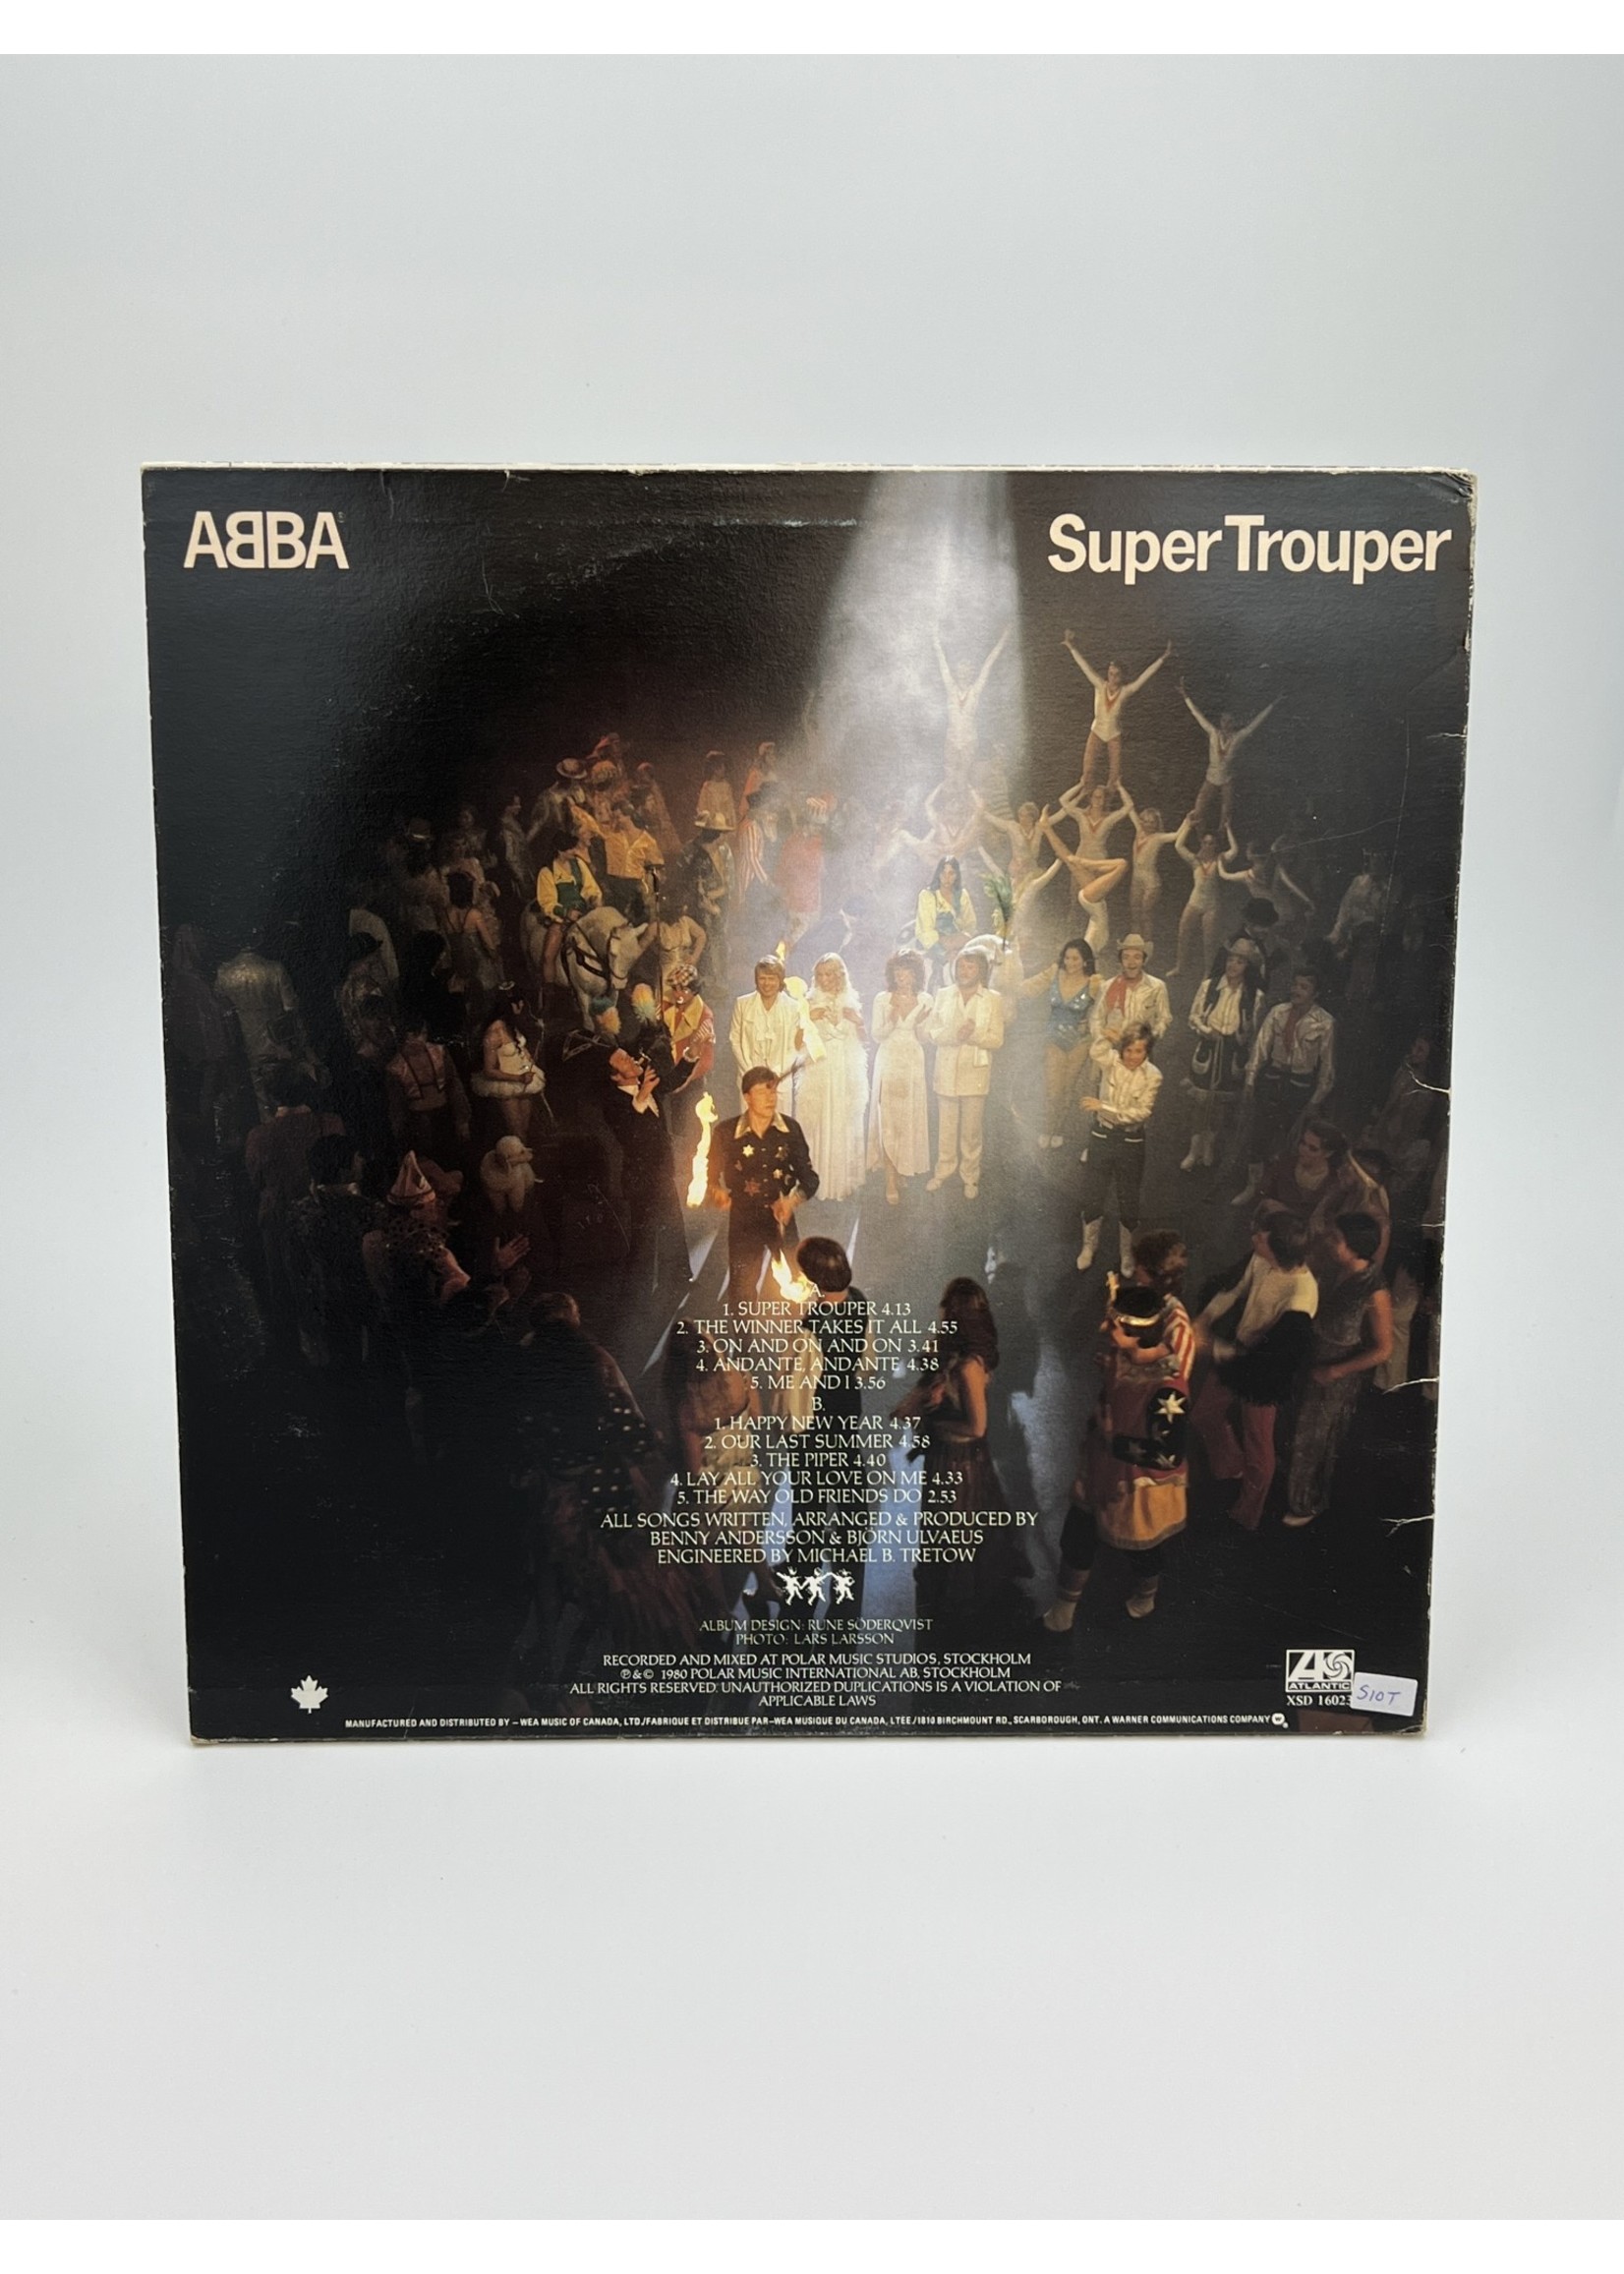 LP ABBA Super Trouper LP Record